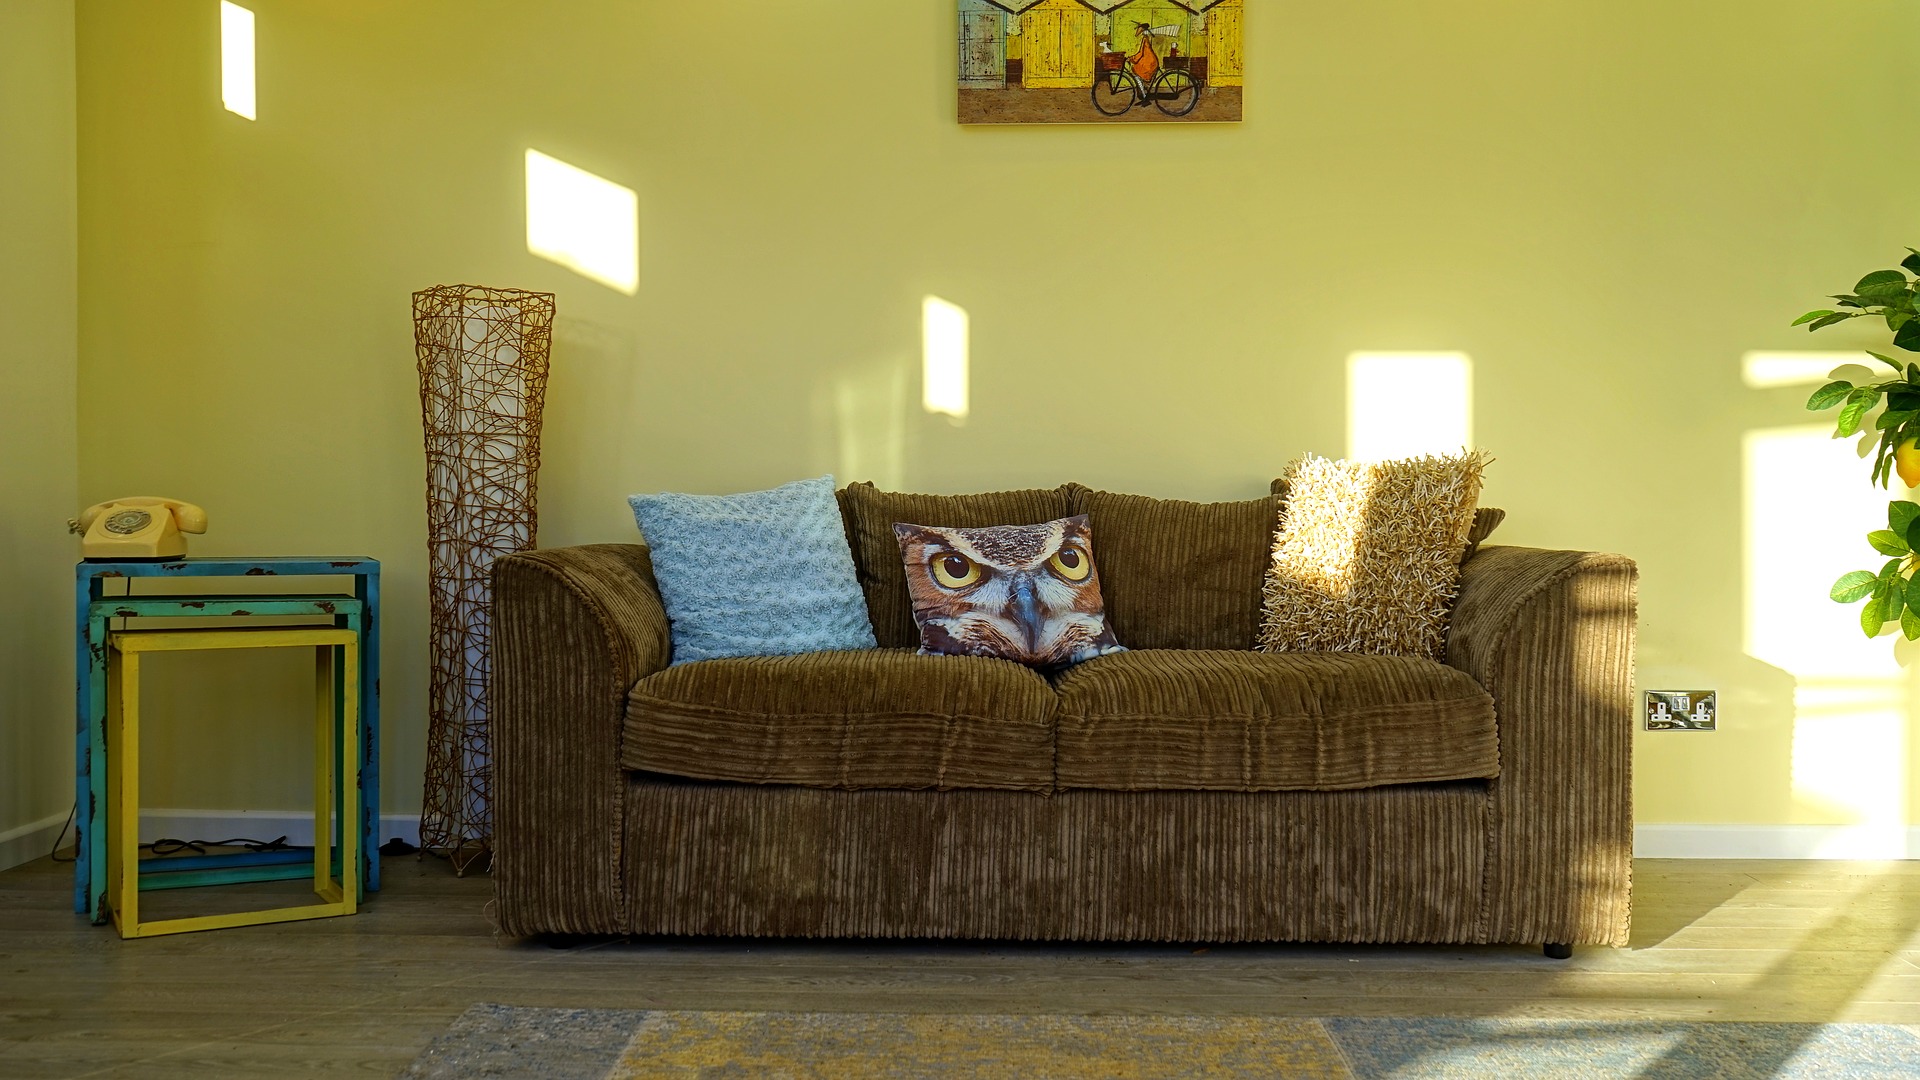 Sala de estar com um sofá marrom e almofada estampada. Ilustração do texto sobre limpar sofá Villas do Atlântico.